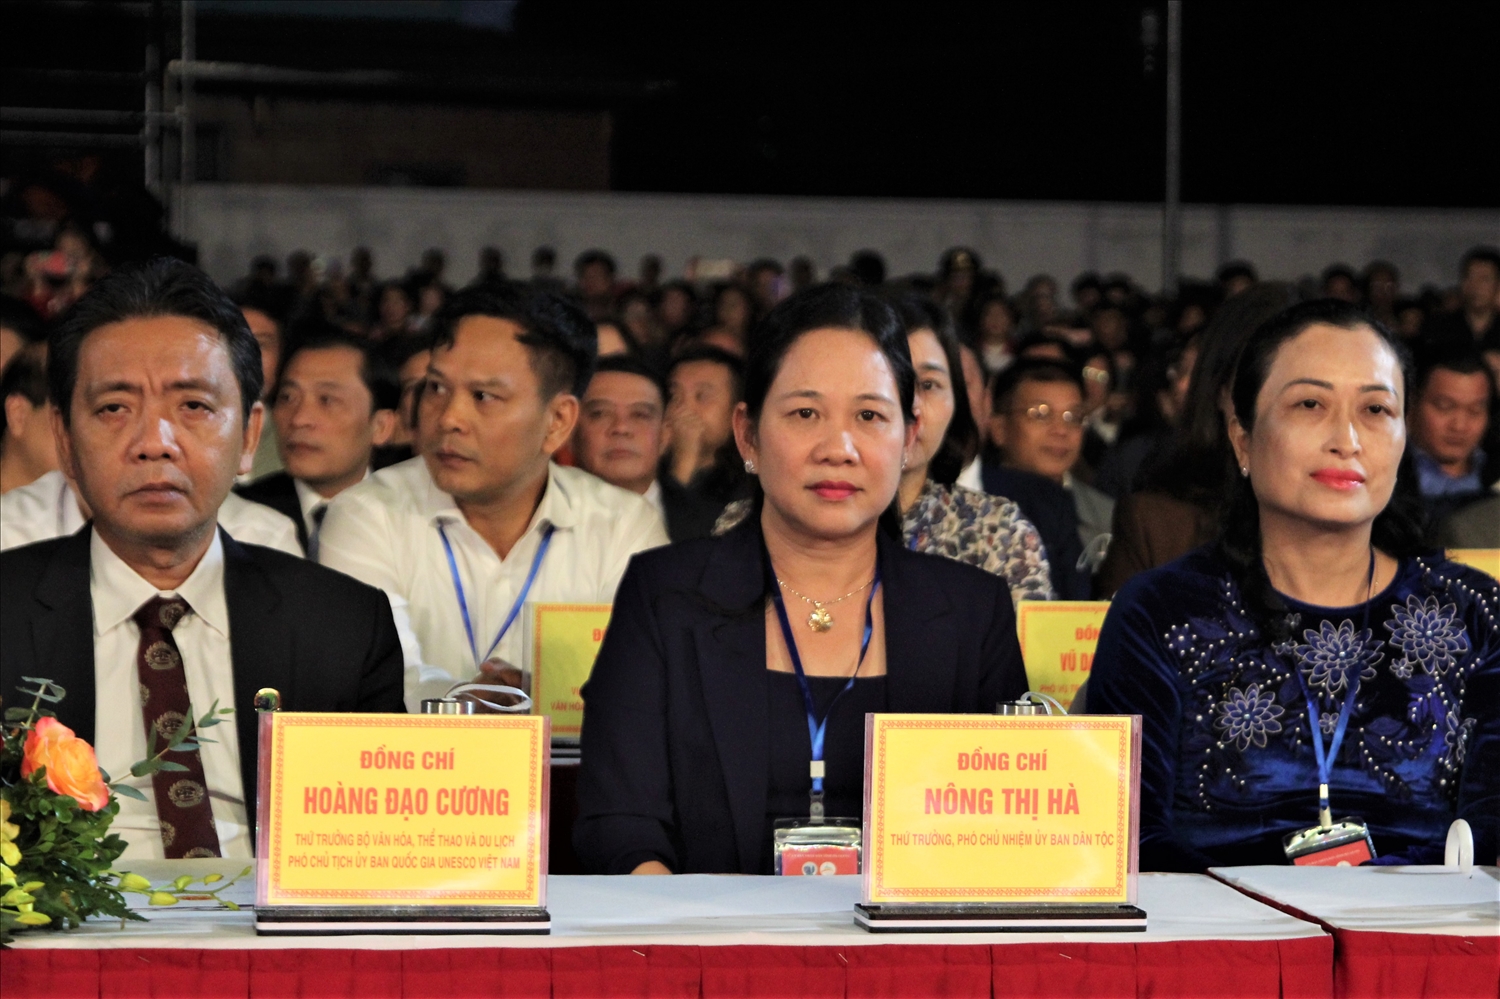 Thứ trưởng, Phó Chủ nhiệm Ủy ban Dân tộc Nông Thị Hà tham dự buổi Lễ